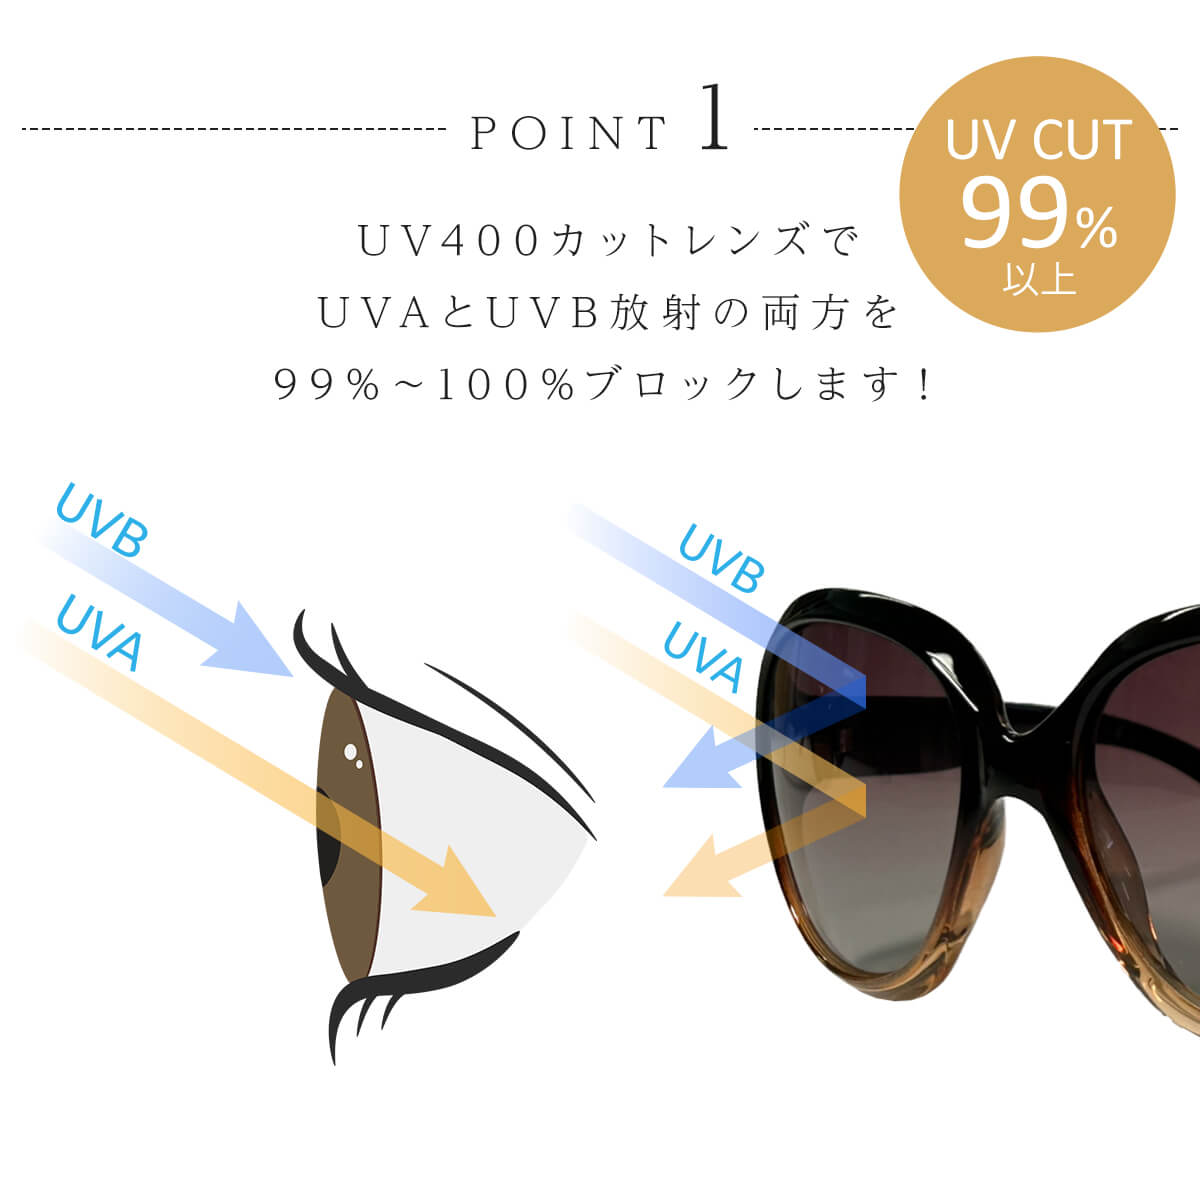 サングラス レディース uvカット おしゃれ 大きめ 小顔 sunglass 眼鏡 メガネ 花粉対策 UV400 紫外線対策 UV対策 偏光 母の日  プレゼント